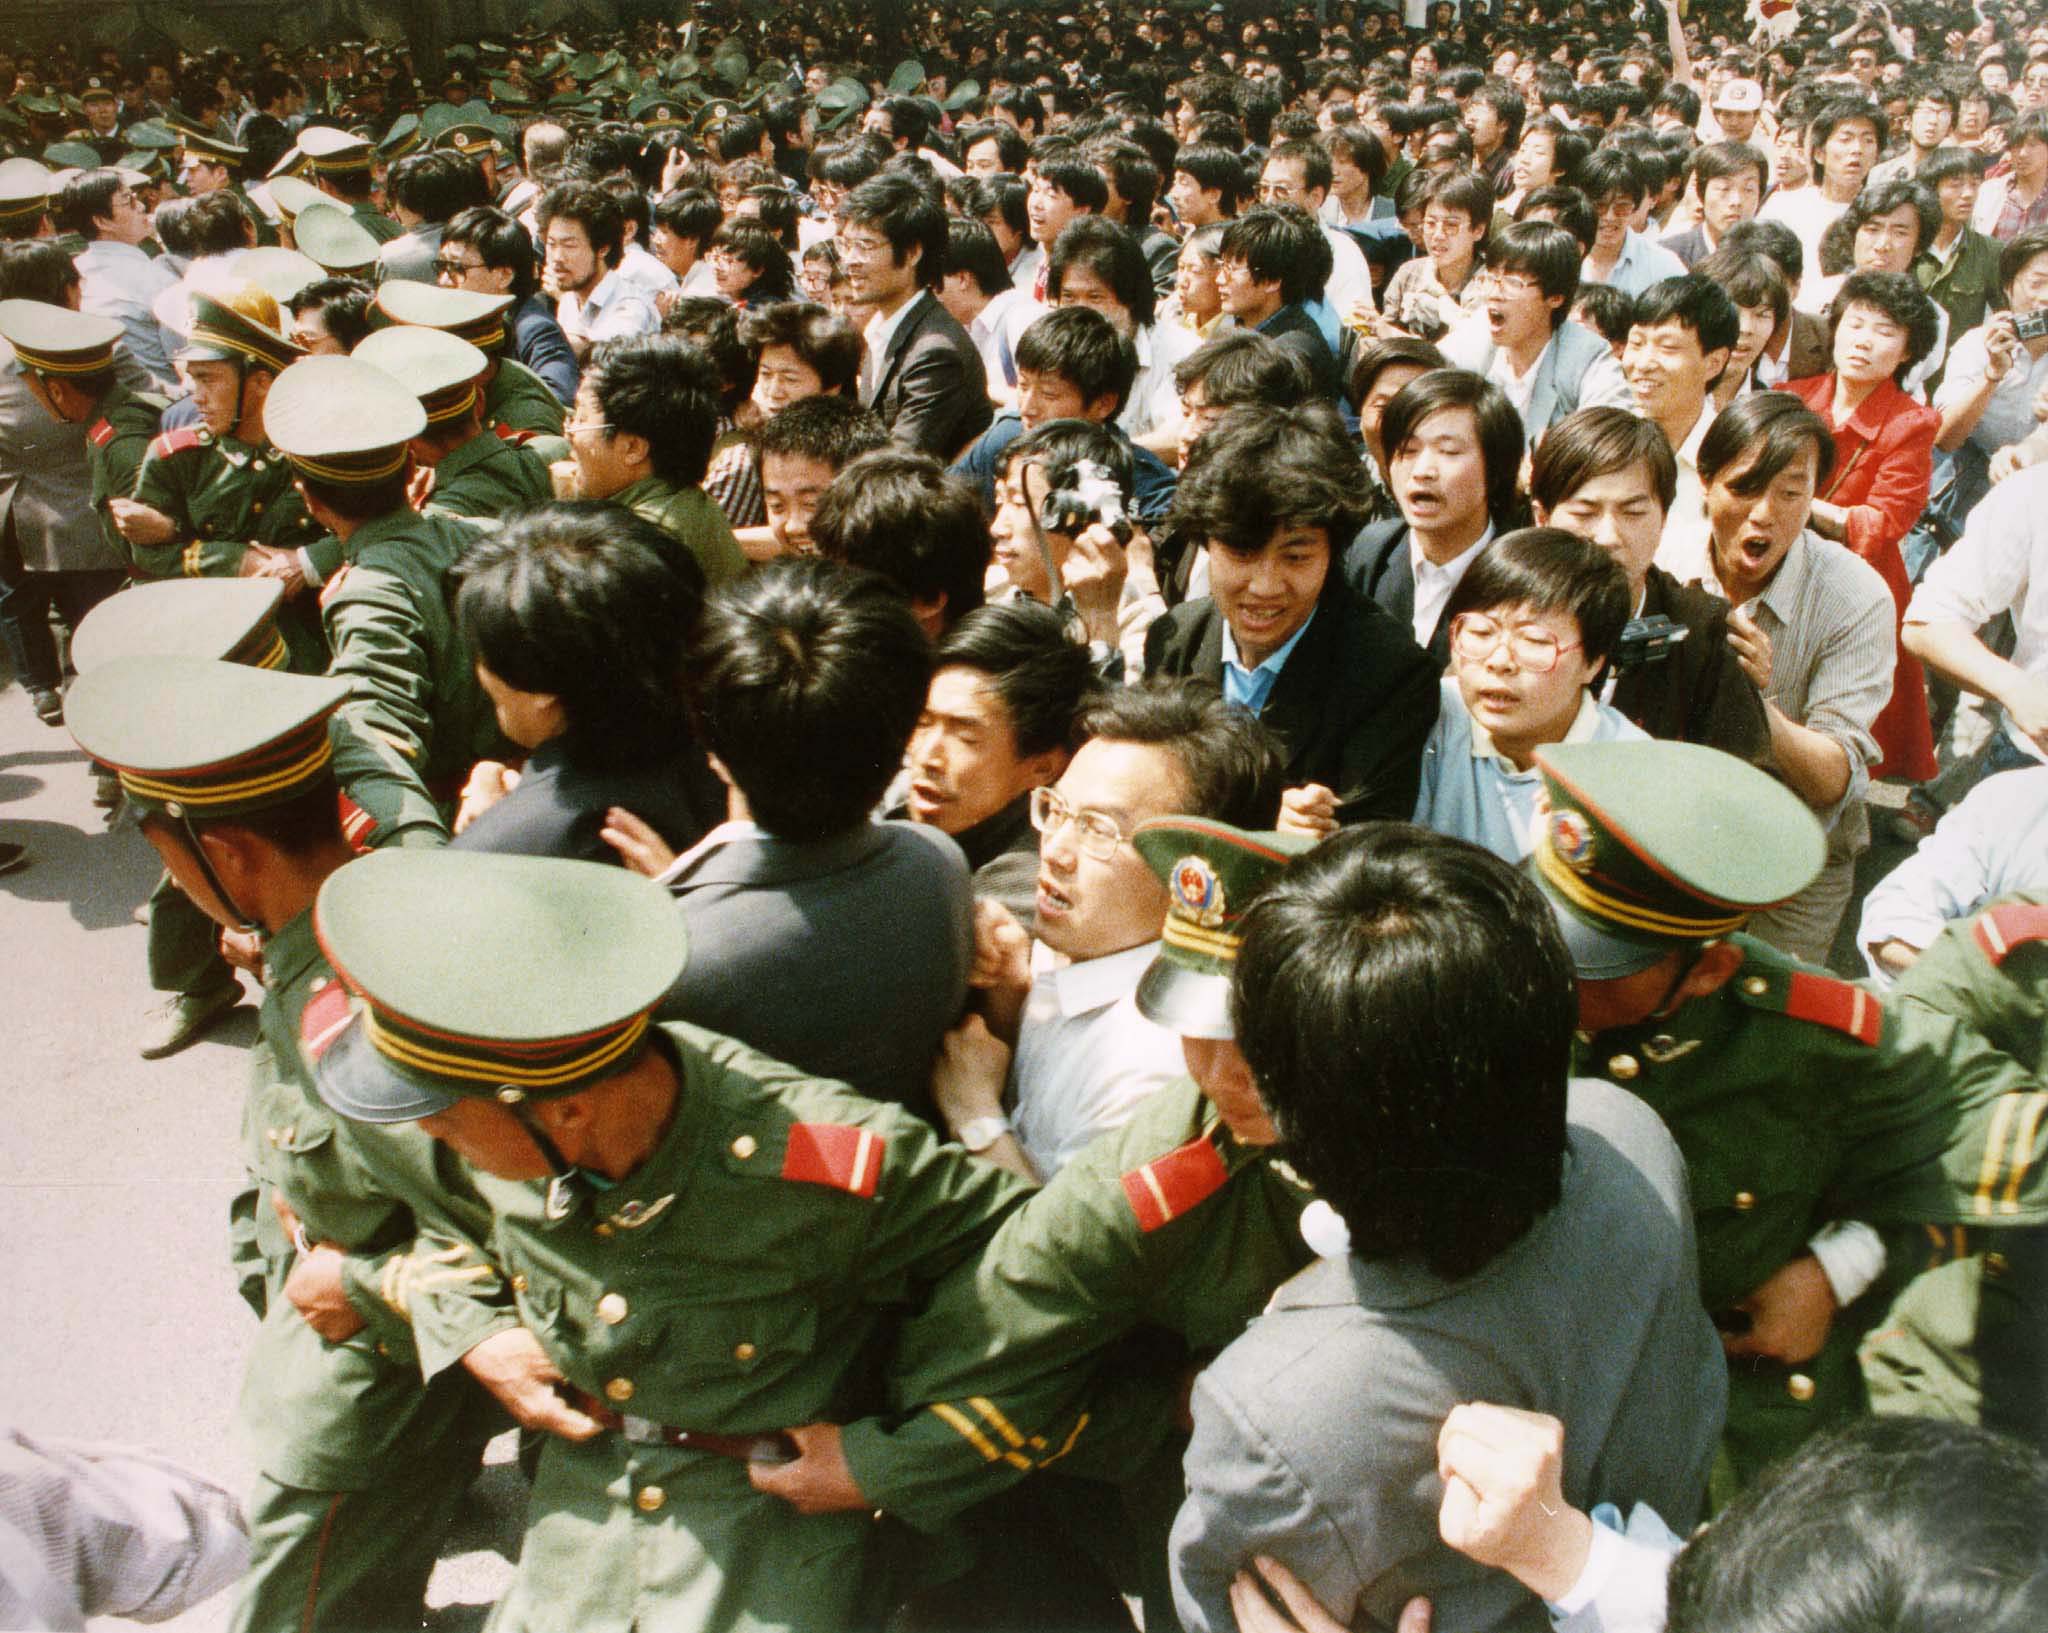 Китайский после. Китай площадь Тяньаньмэнь 1989. События на площади Тяньаньмэнь 1989. Пекин площадь Тяньаньмэнь 1989 год. Восстание студентов в Китае на площади Тяньаньмэнь 1989.